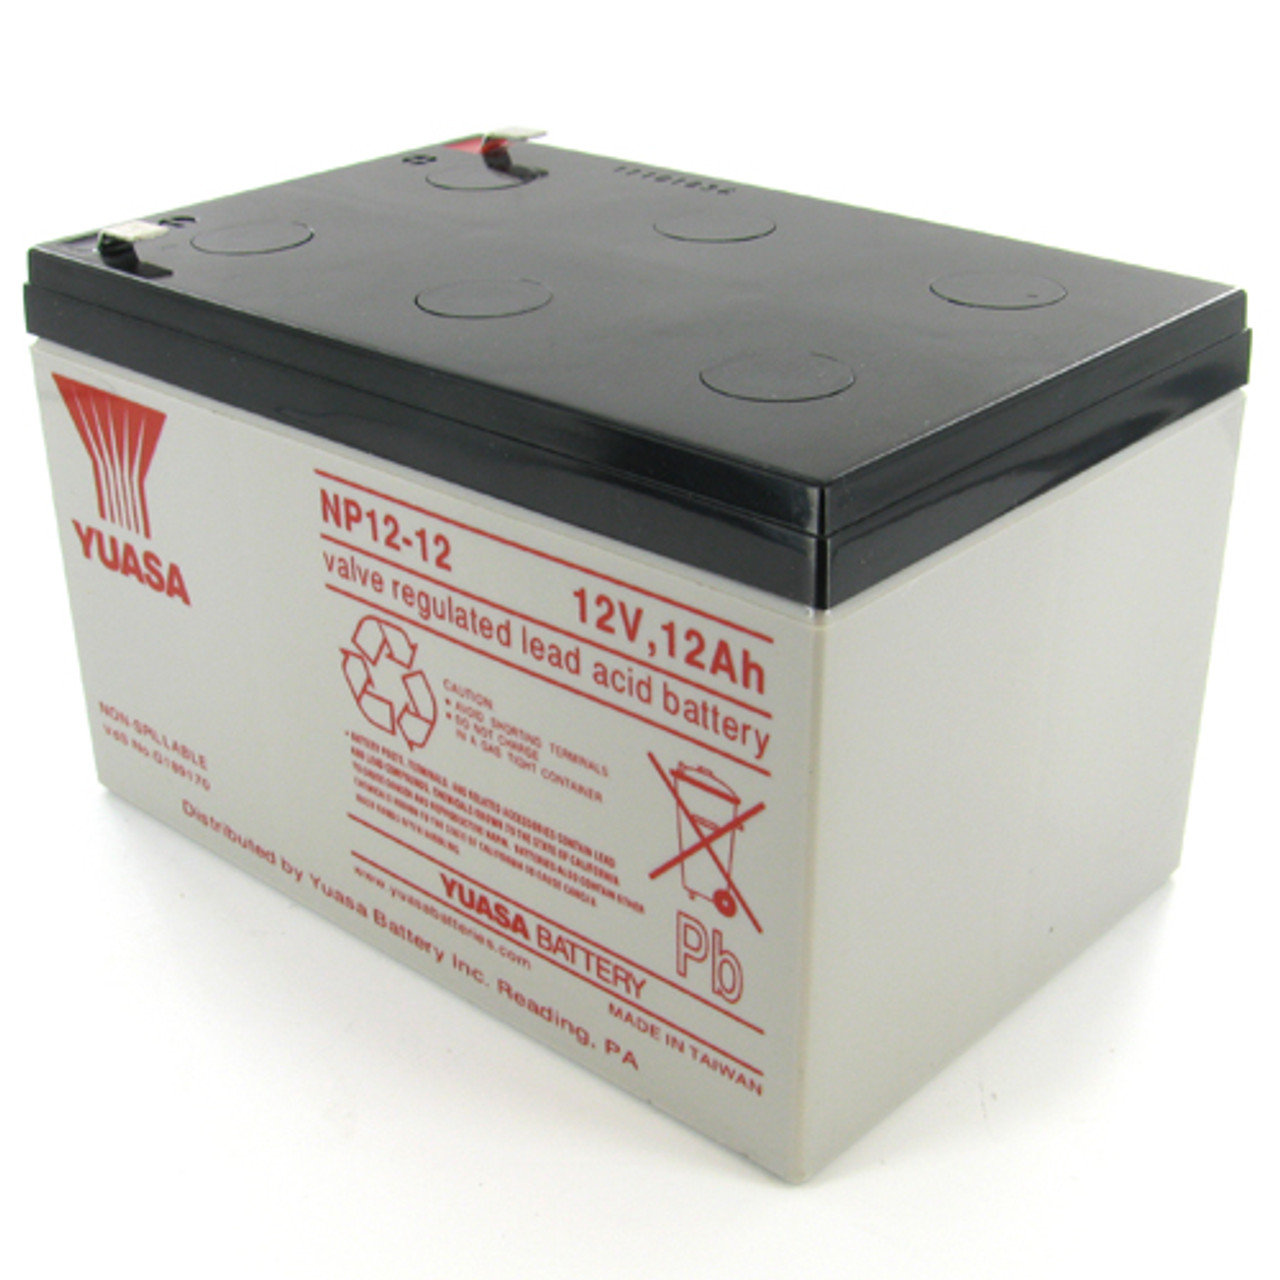 Yuasa 12V 12Ah NP12-12 Sealed Lead Acid Battery